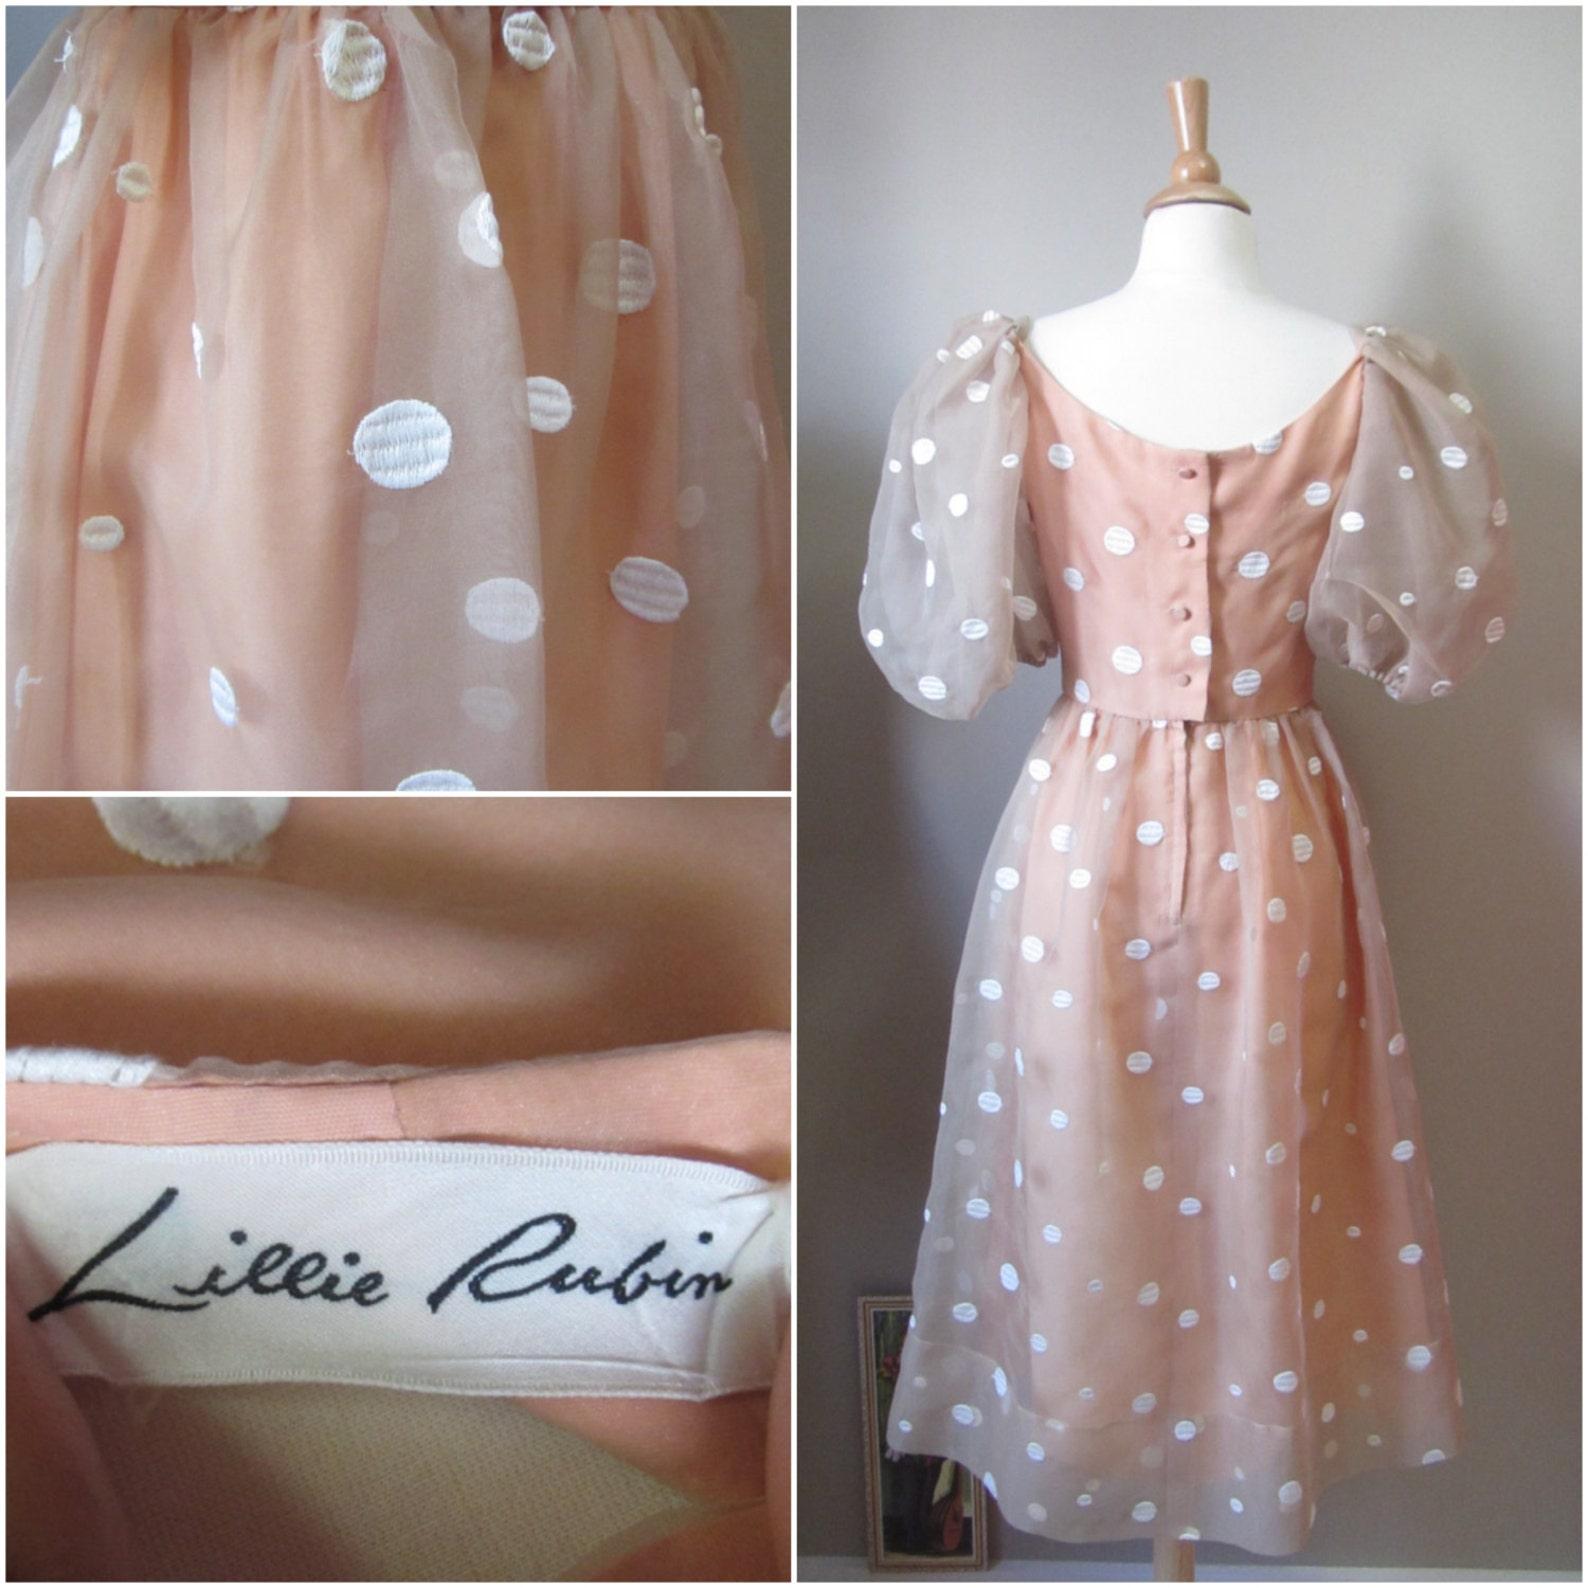 Lillie Rubin Polka Dot Dress, Circa 1980s For Sale 2